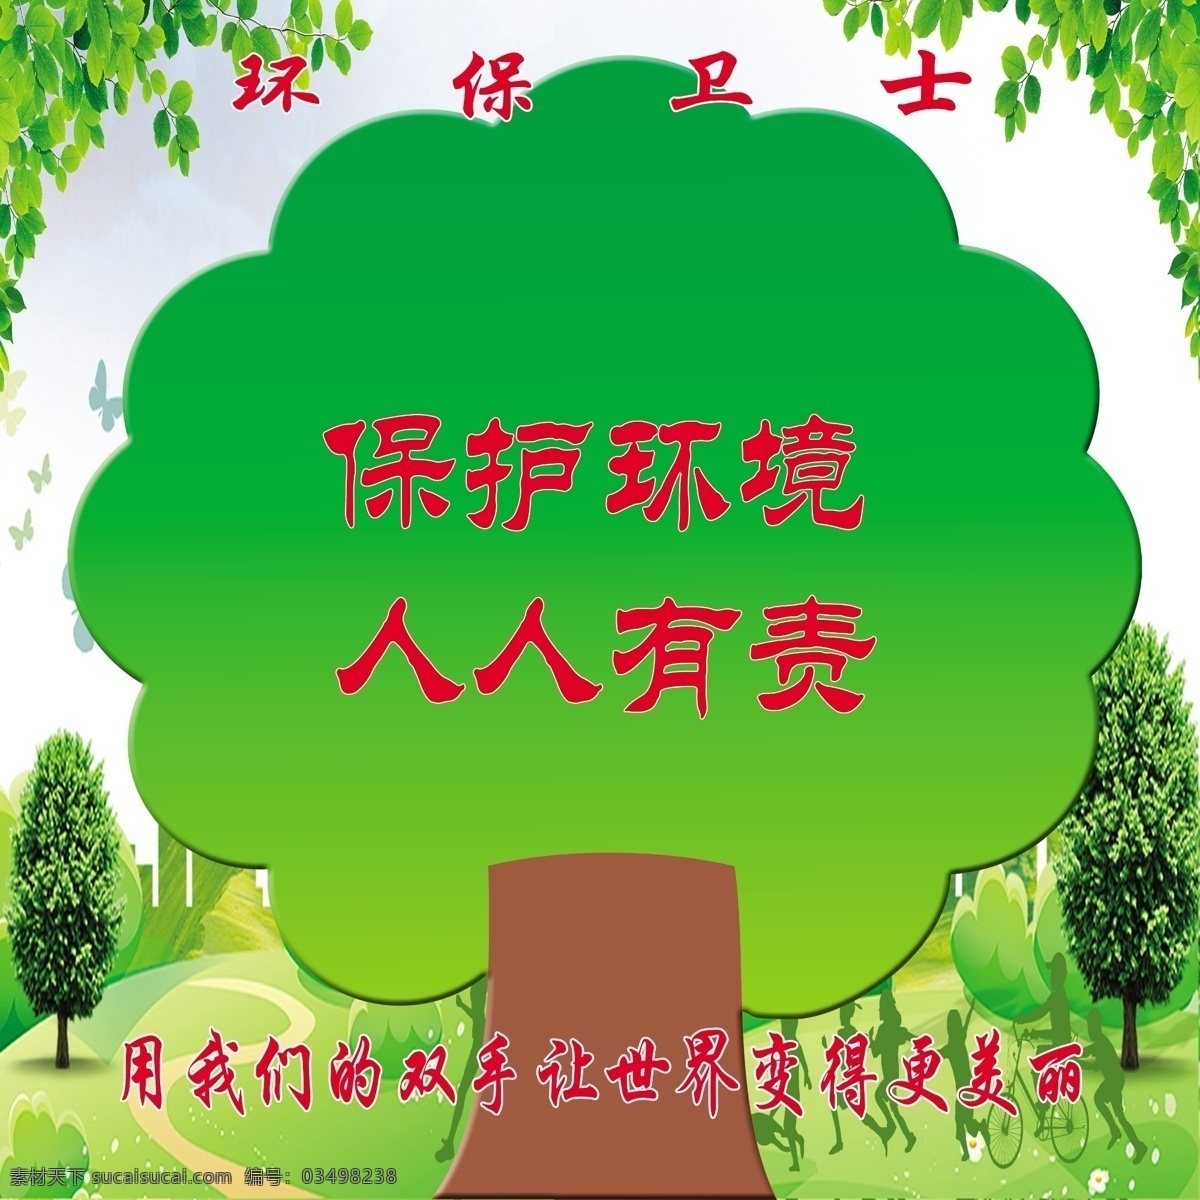 环保卫士 大树 树叶 保护环境 绿色 校园宣传 走廊文化 室内广告设计